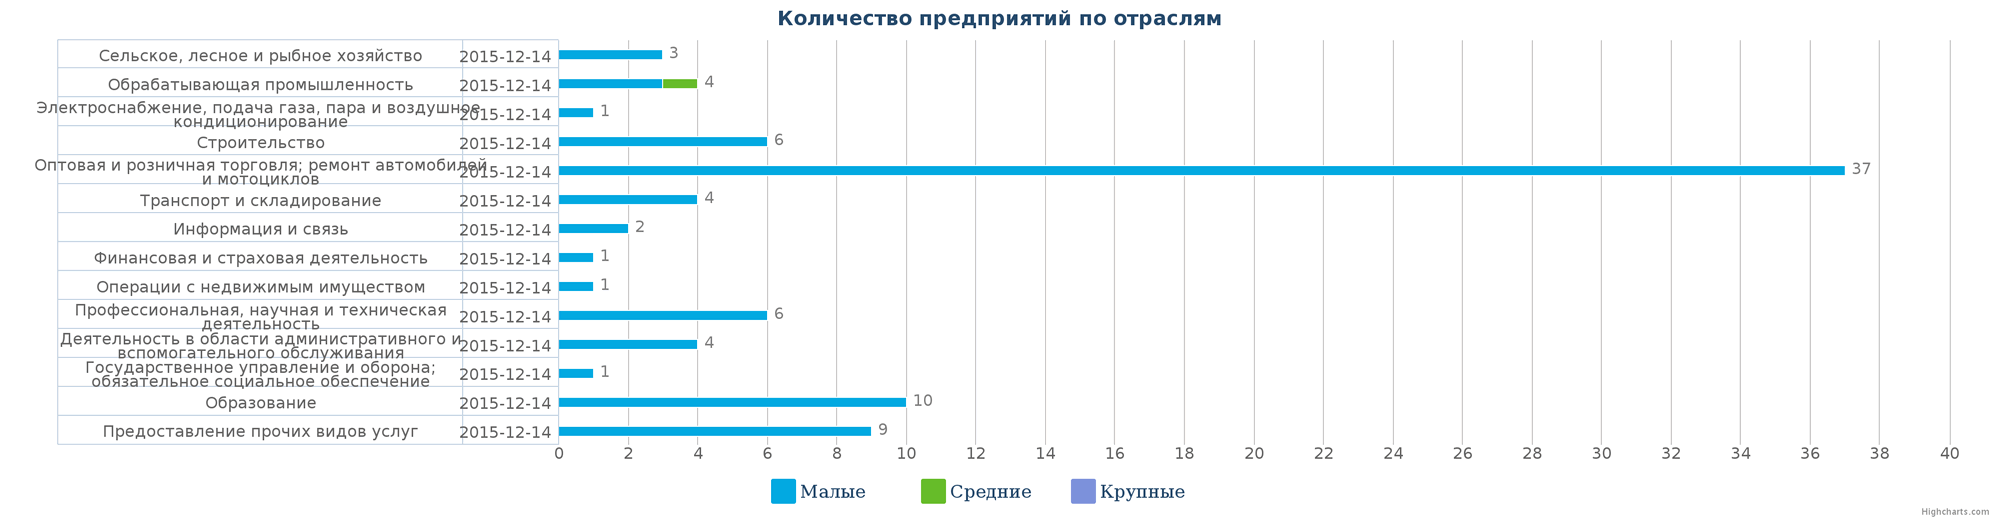 Количество ликвидированных организаций в базе Казахстана по отраслям